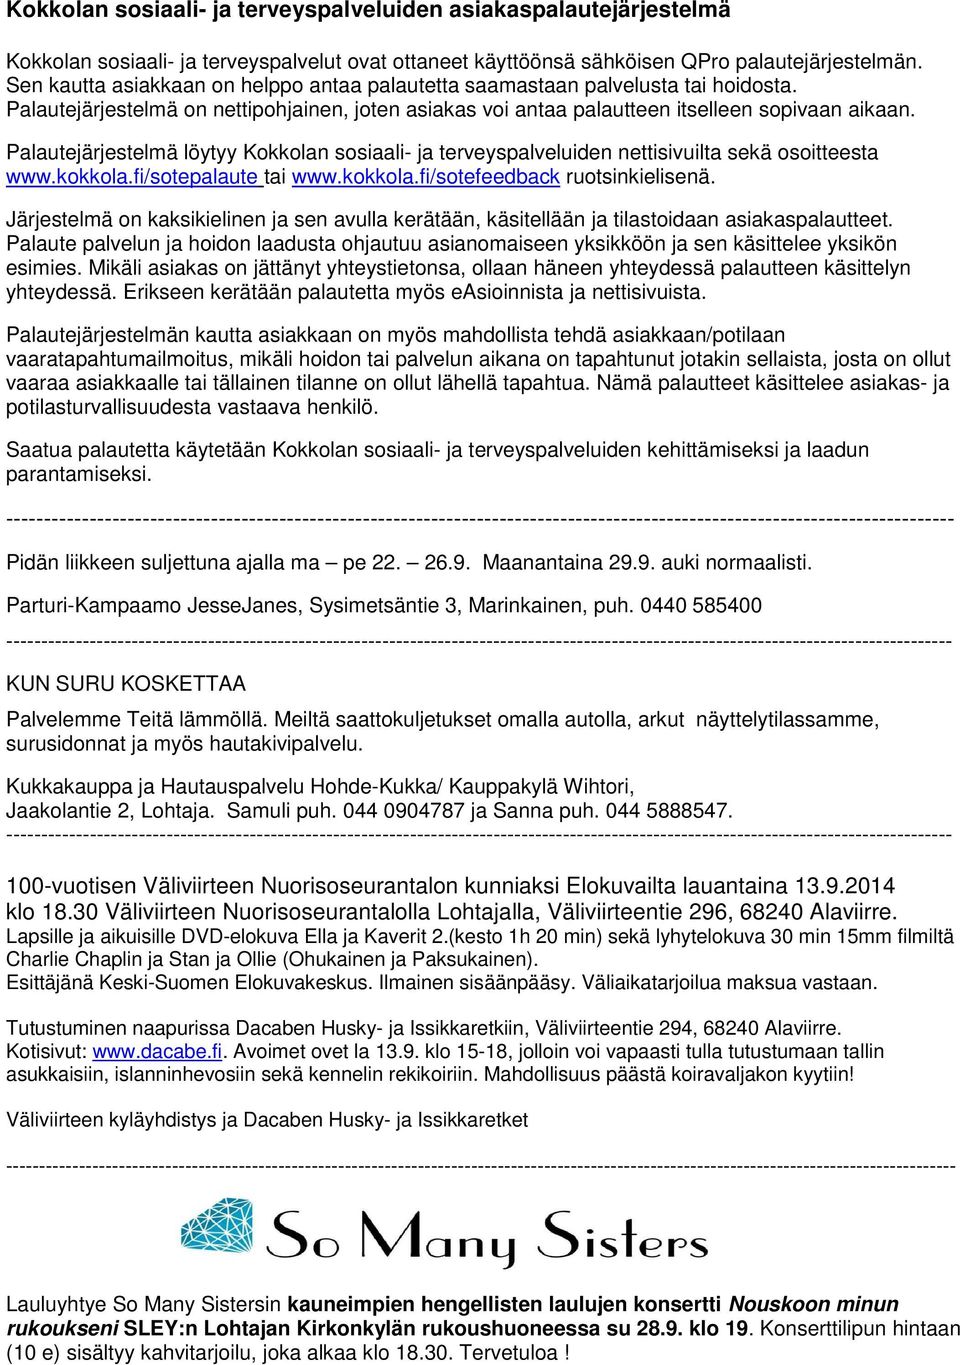 Palautejärjestelmä löytyy Kokkolan sosiaali- ja terveyspalveluiden nettisivuilta sekä osoitteesta www.kokkola.fi/sotepalaute tai www.kokkola.fi/sotefeedback ruotsinkielisenä.